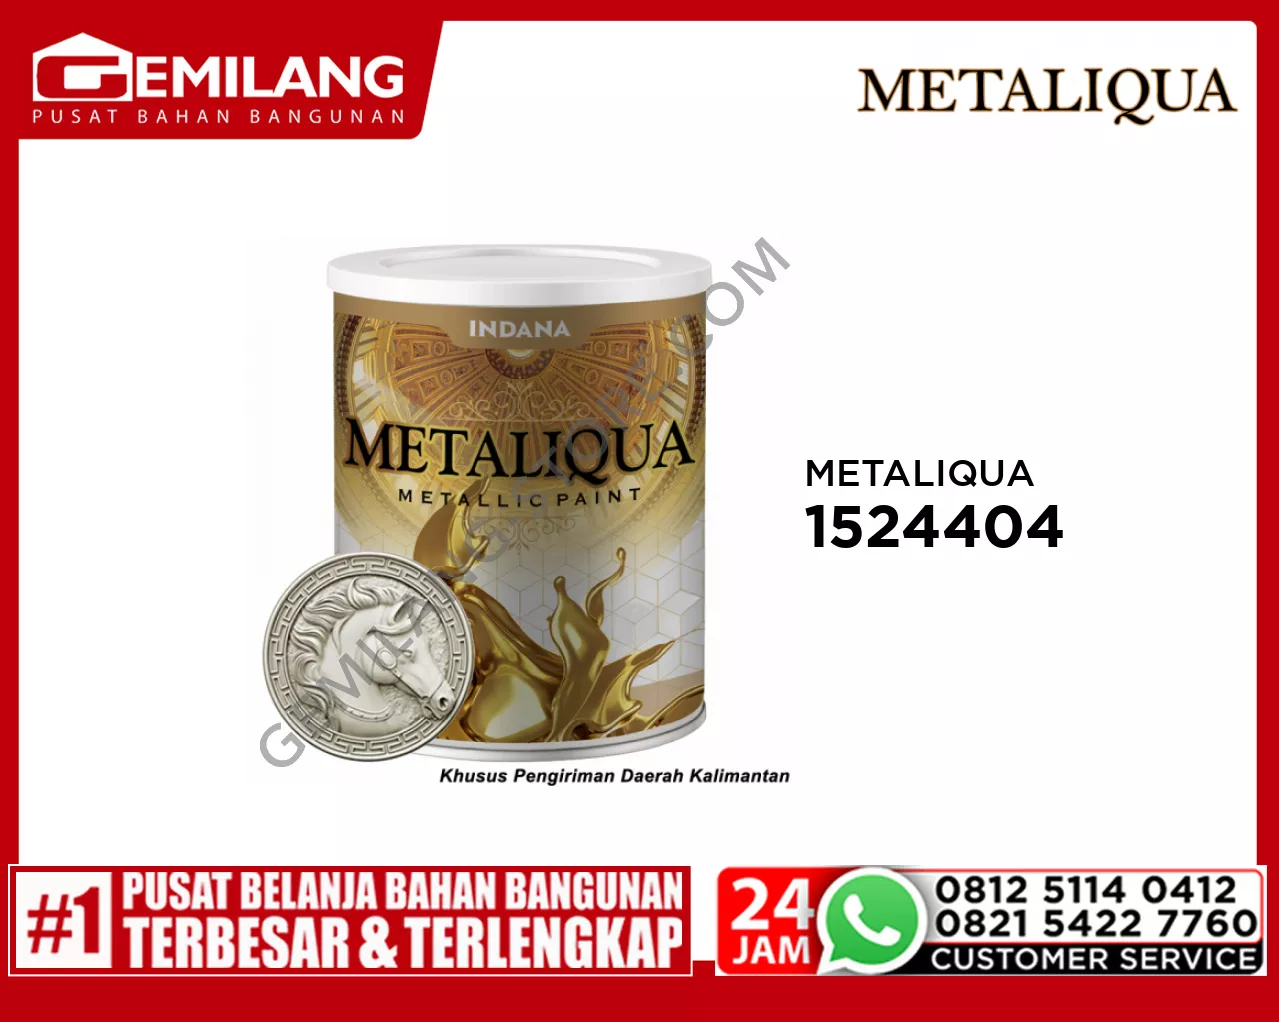 METALIQUA PEARL WHITE 0.90ltr (1524404)